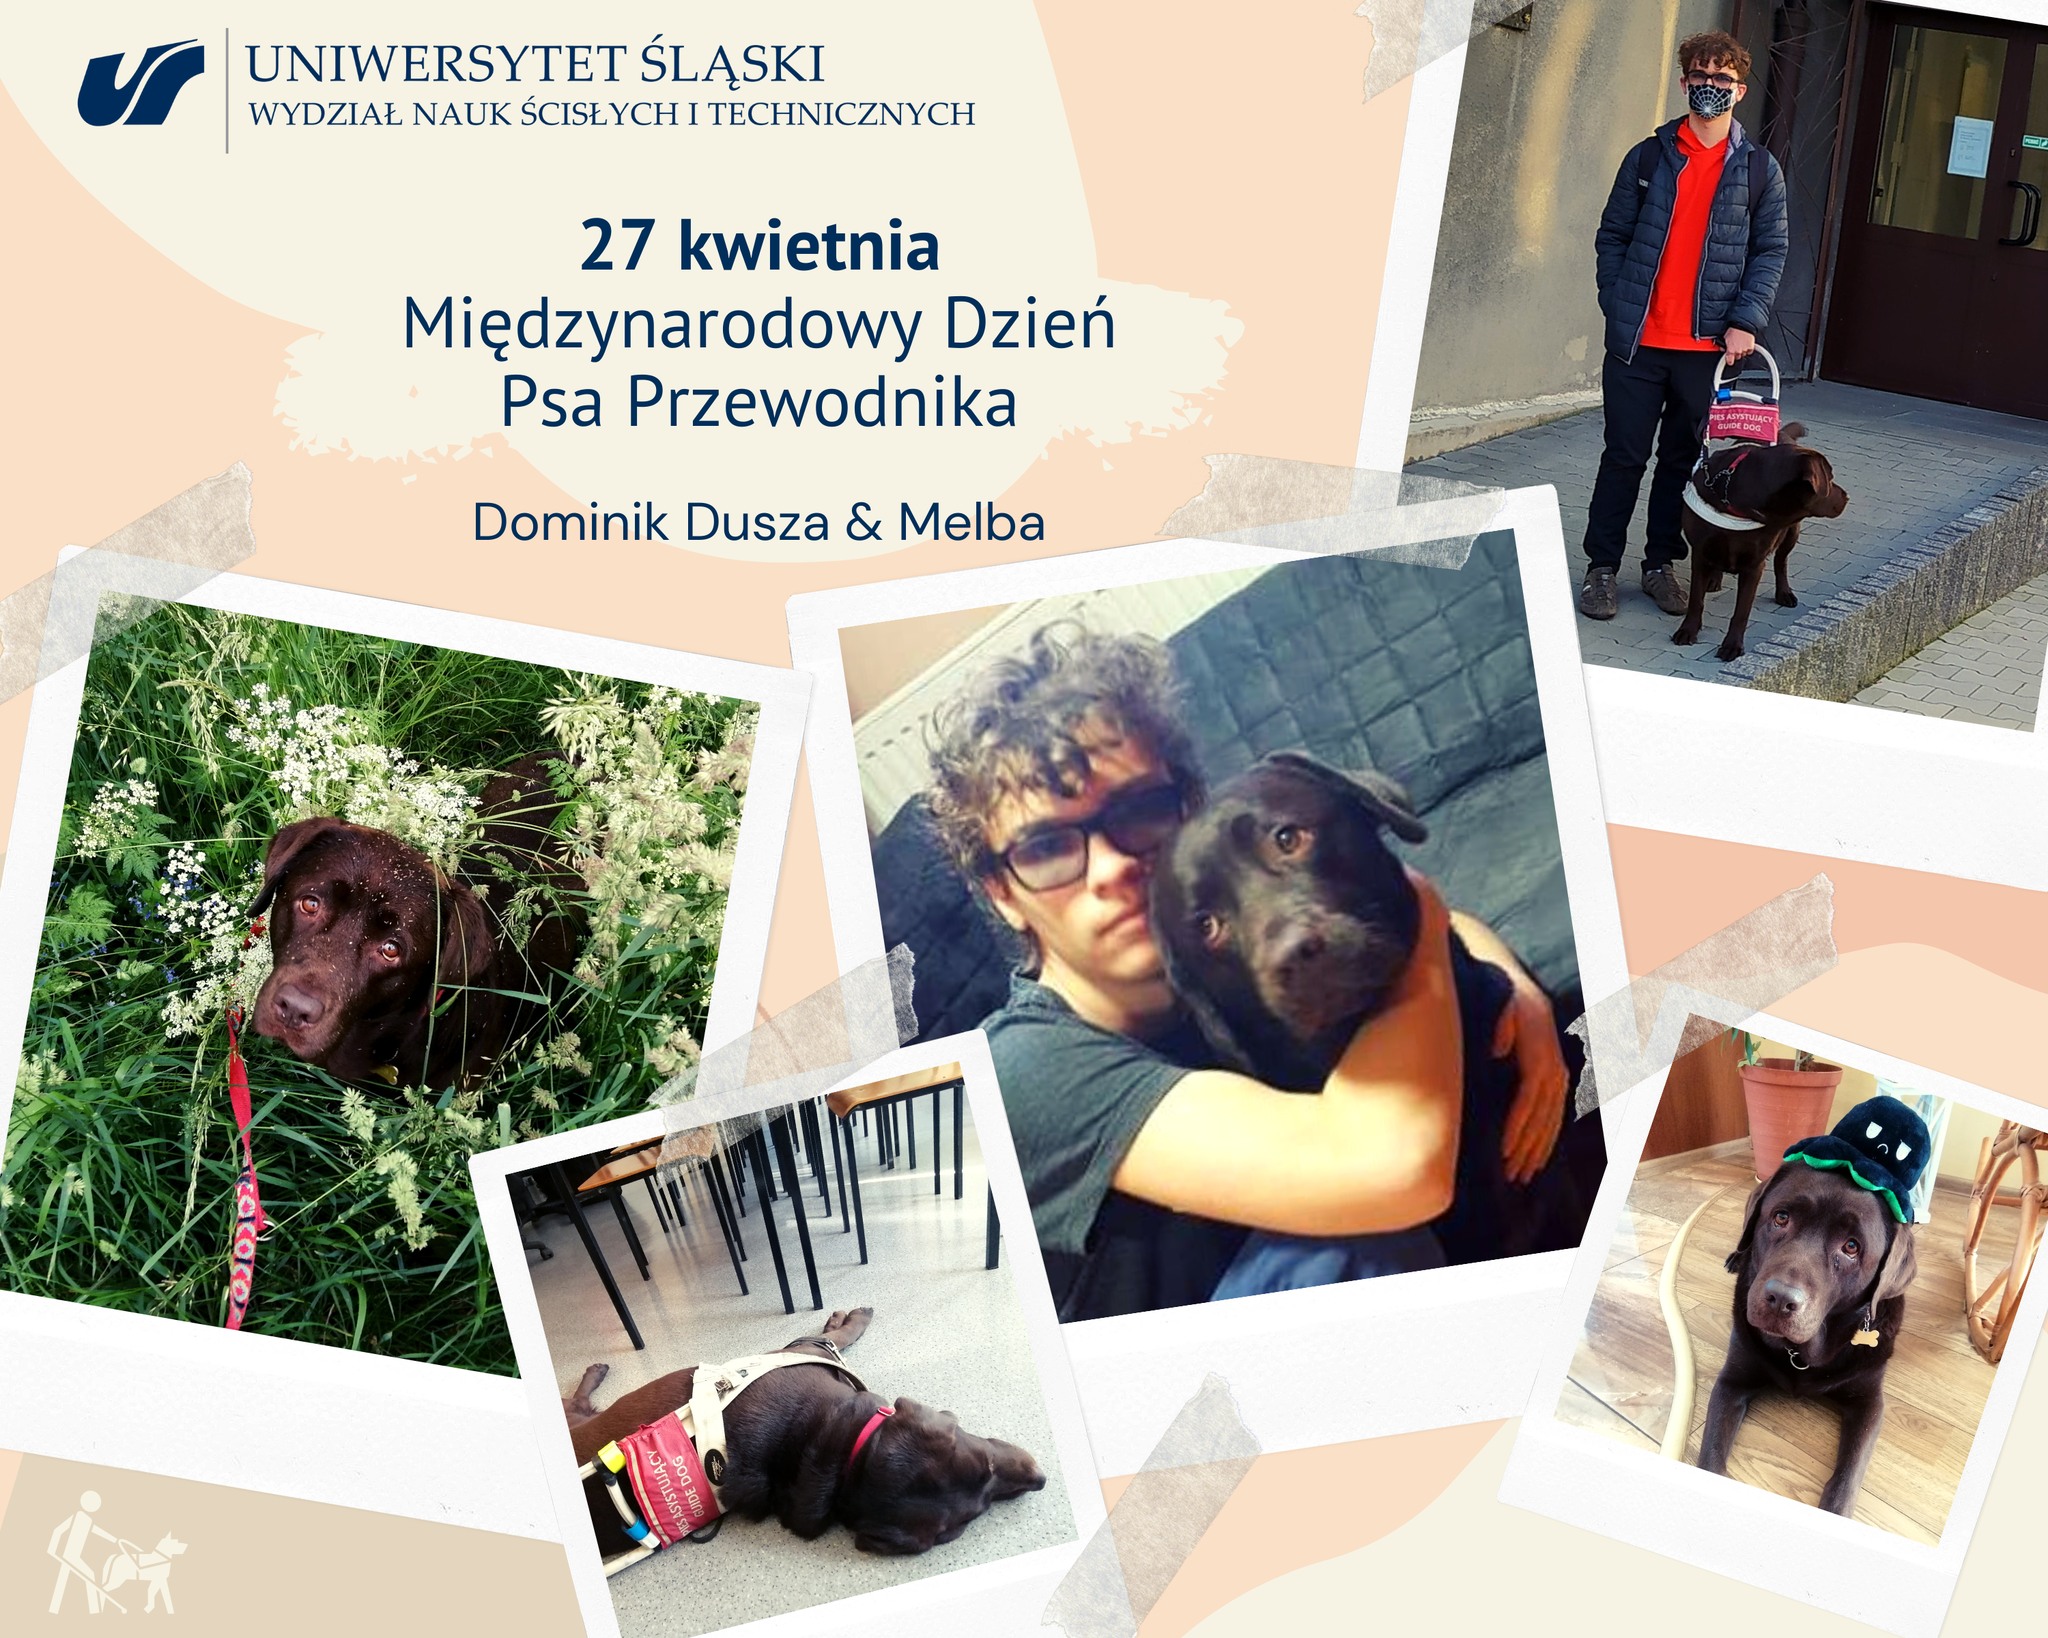 Pies przewodnik na Uniwersytecie Śląskim – Międzynarodowy Dzień Psa Przewodnika